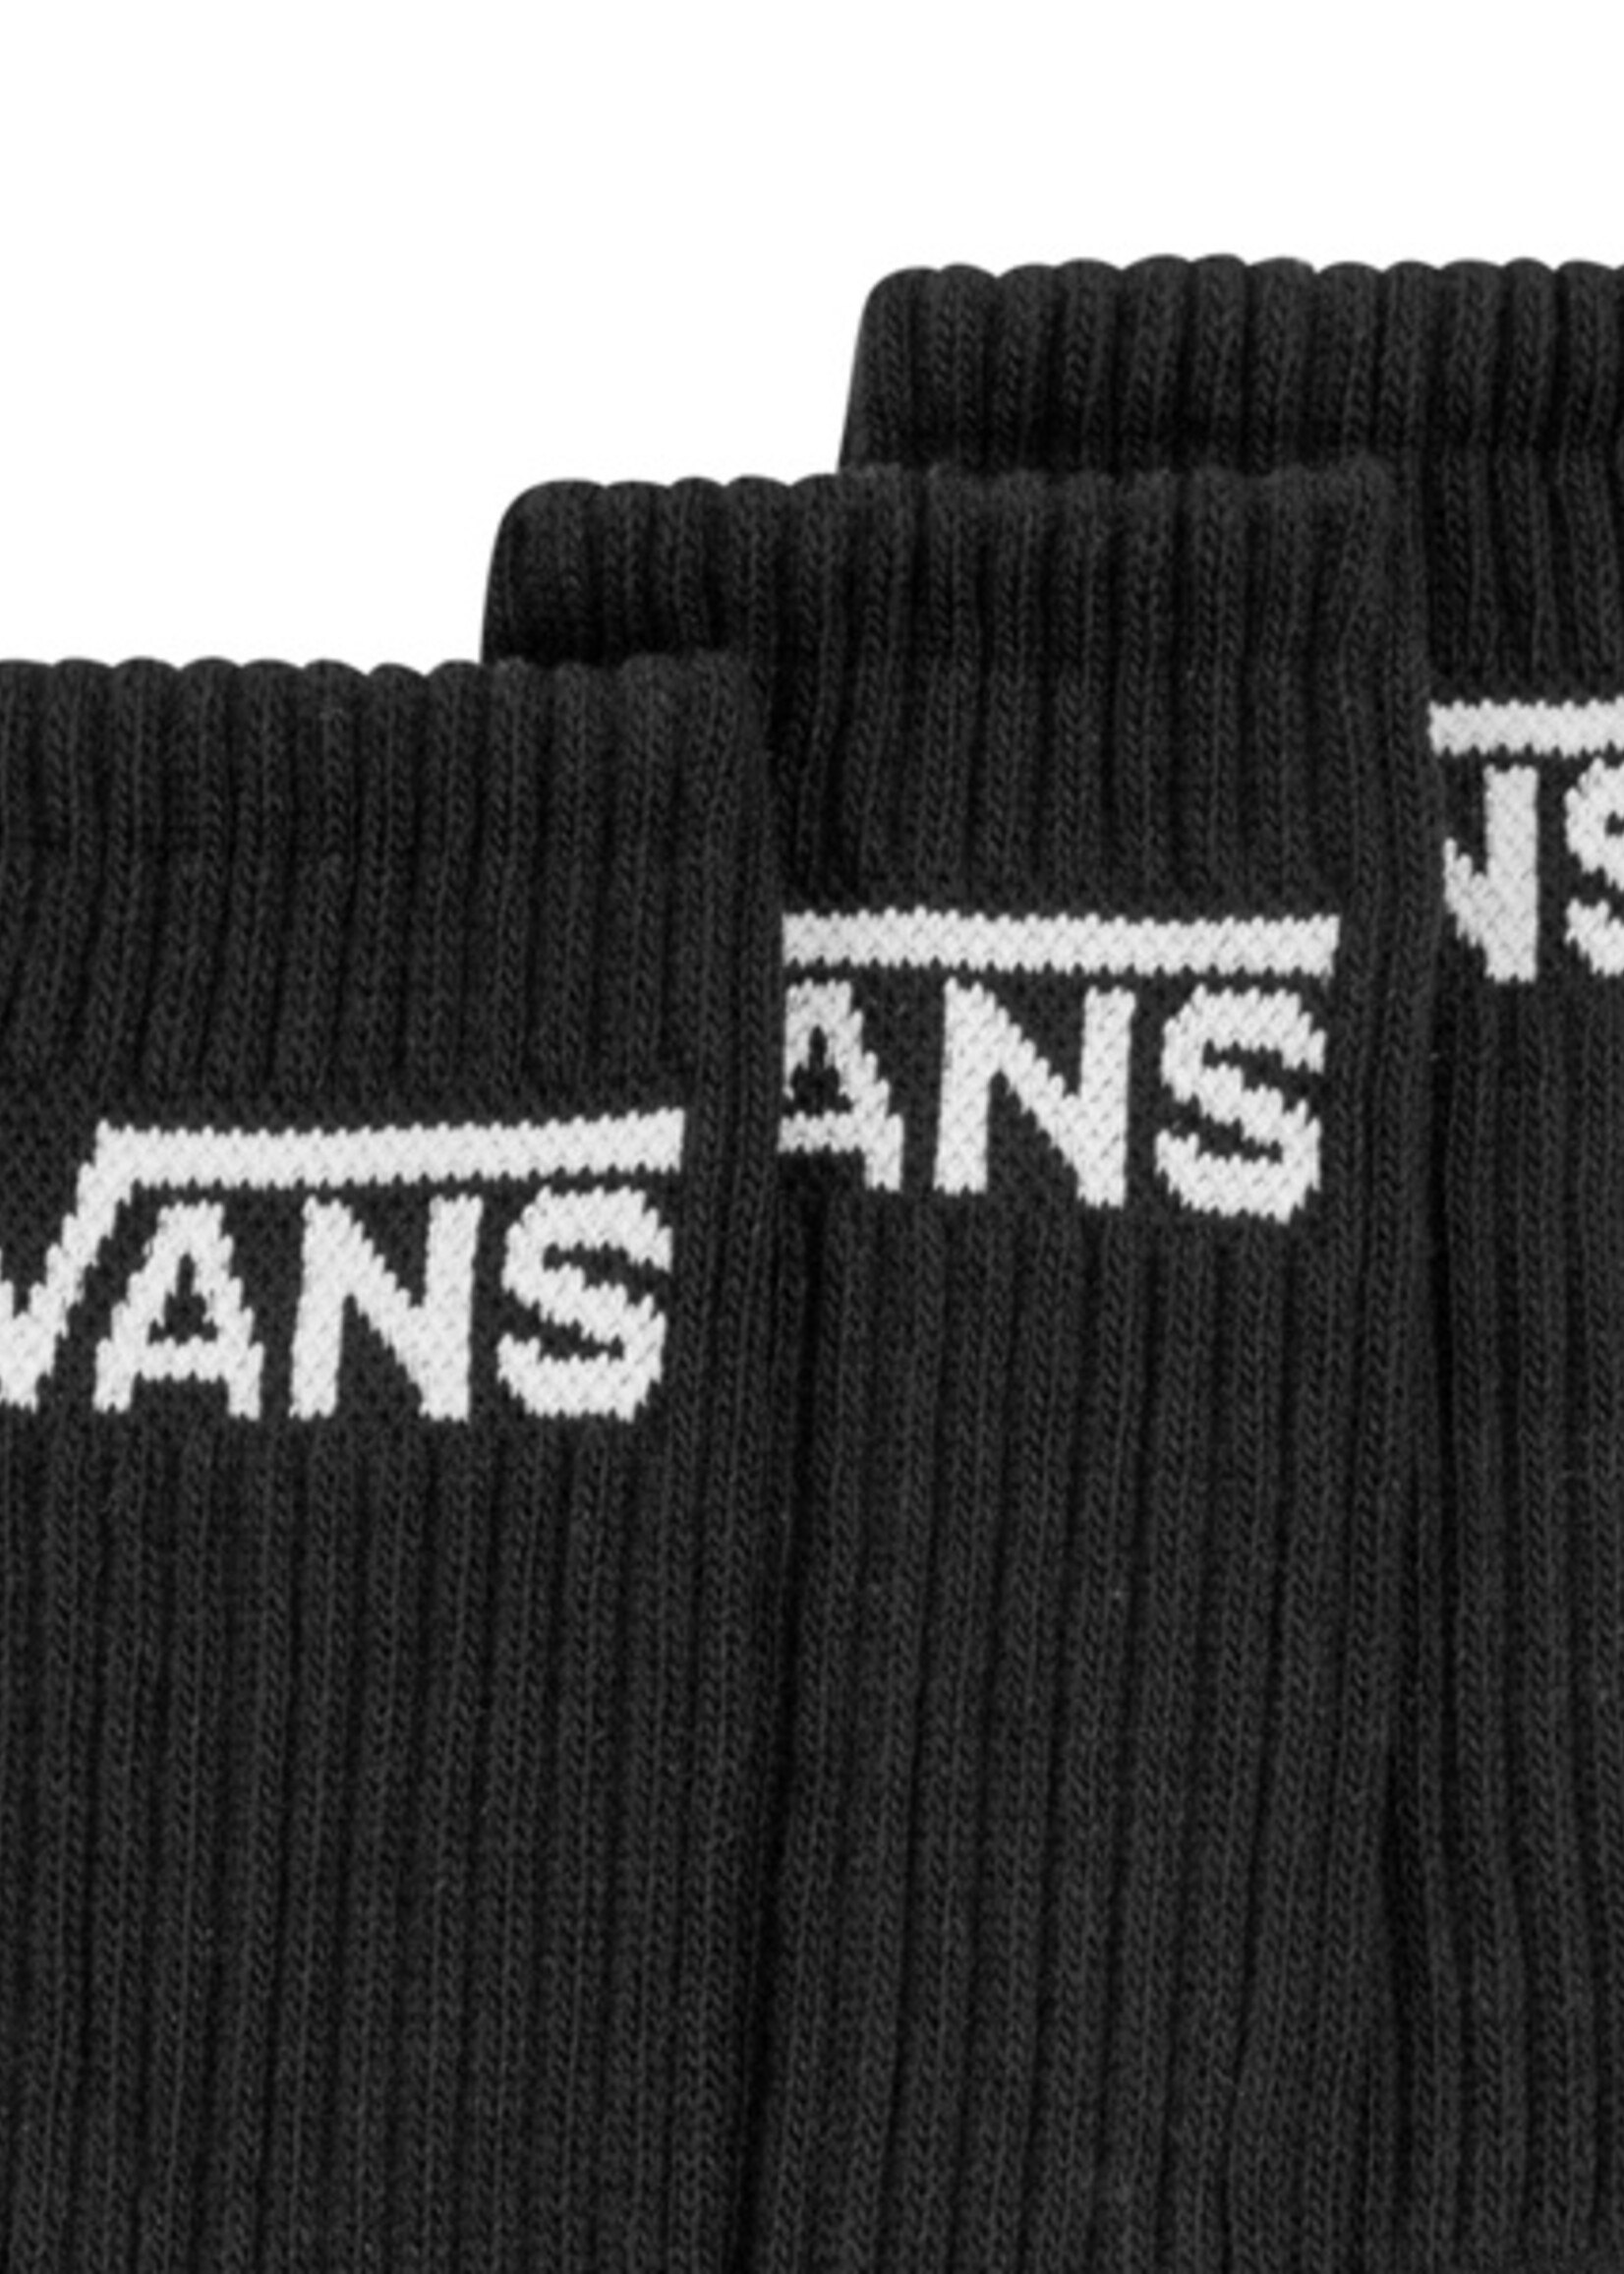 Vans Classic Crew Socks Zwart